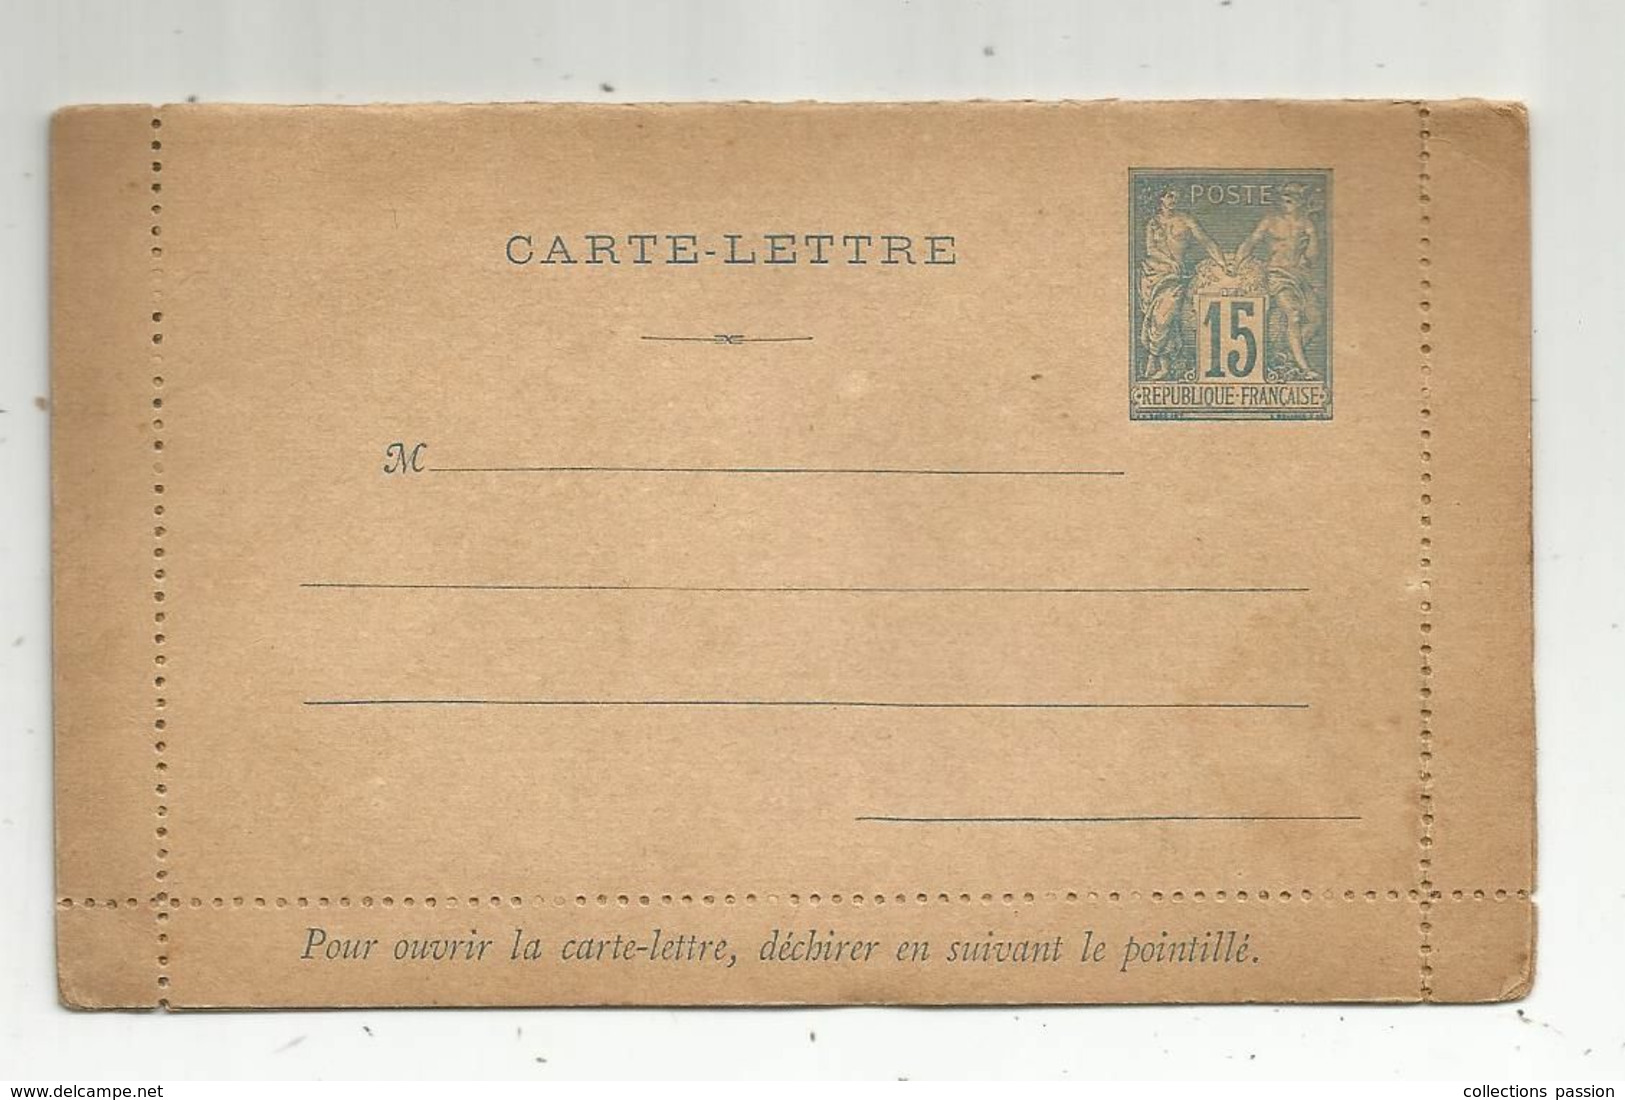 CARTE - LETTRE ,15 , République Française , Neuf - Kartenbriefe